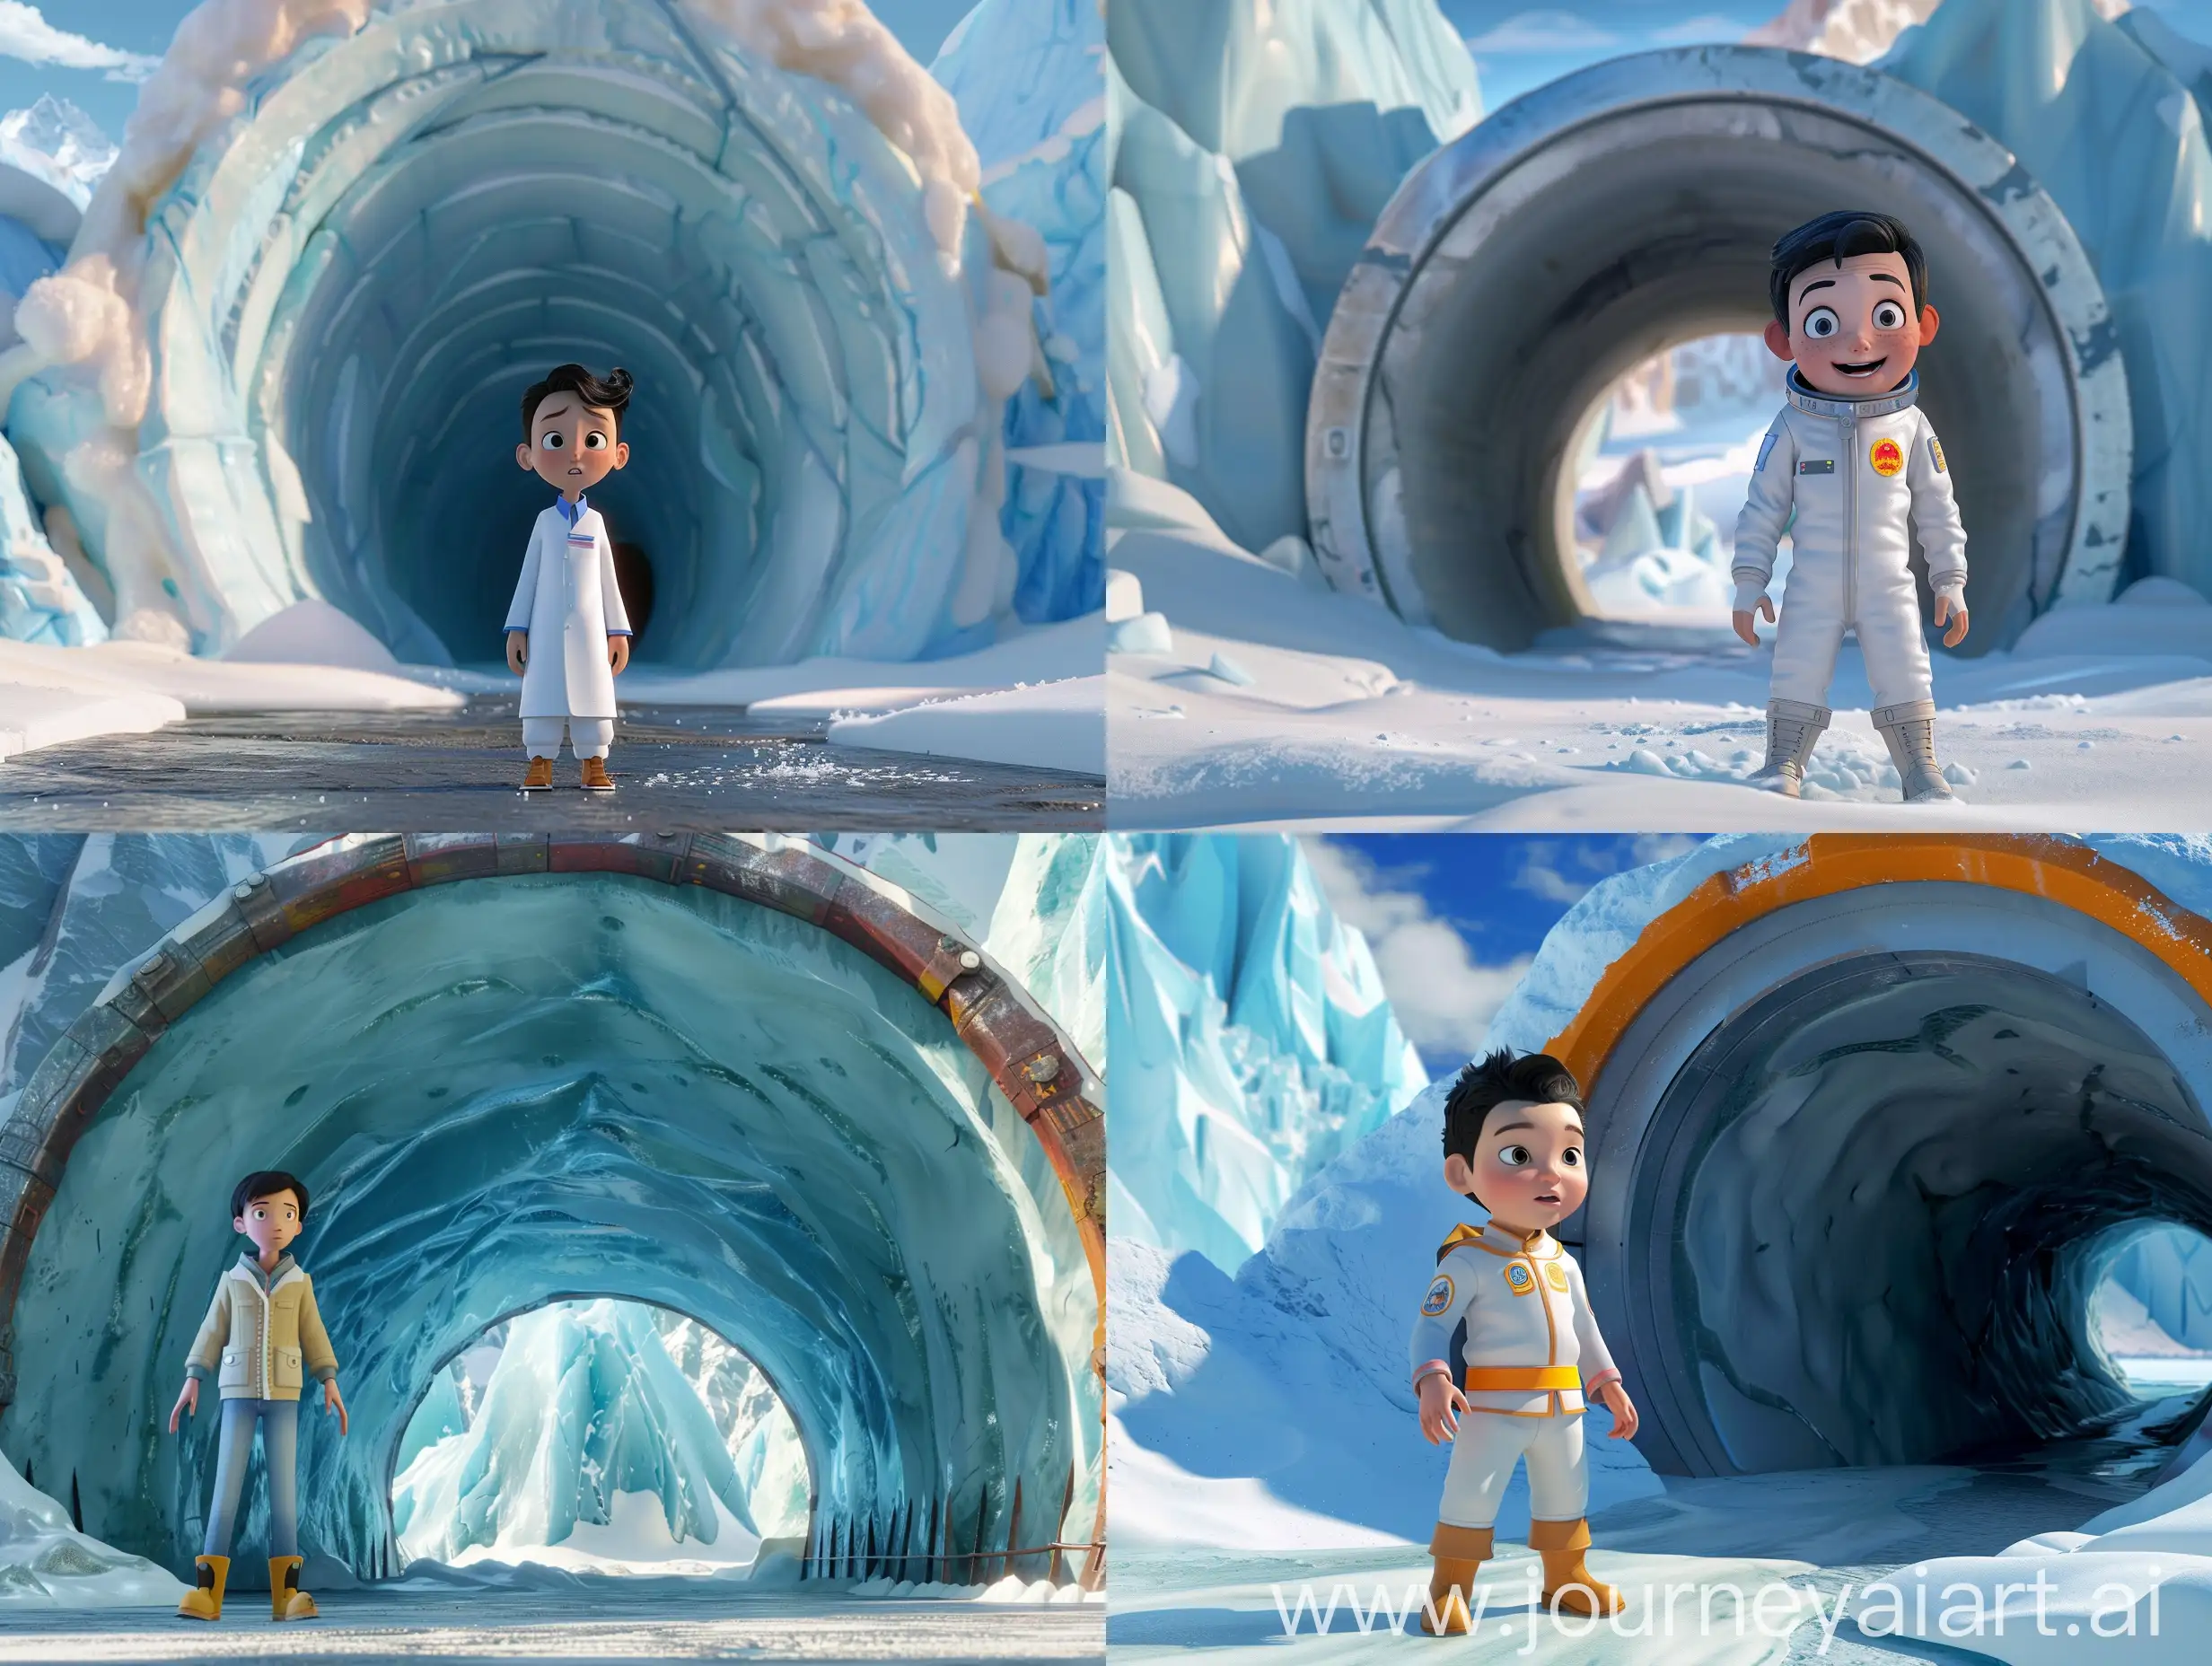 中国青年科学家沈渊站在地球隧道入口，背景是壮观的南极景象。3D，迪斯尼动画风格。